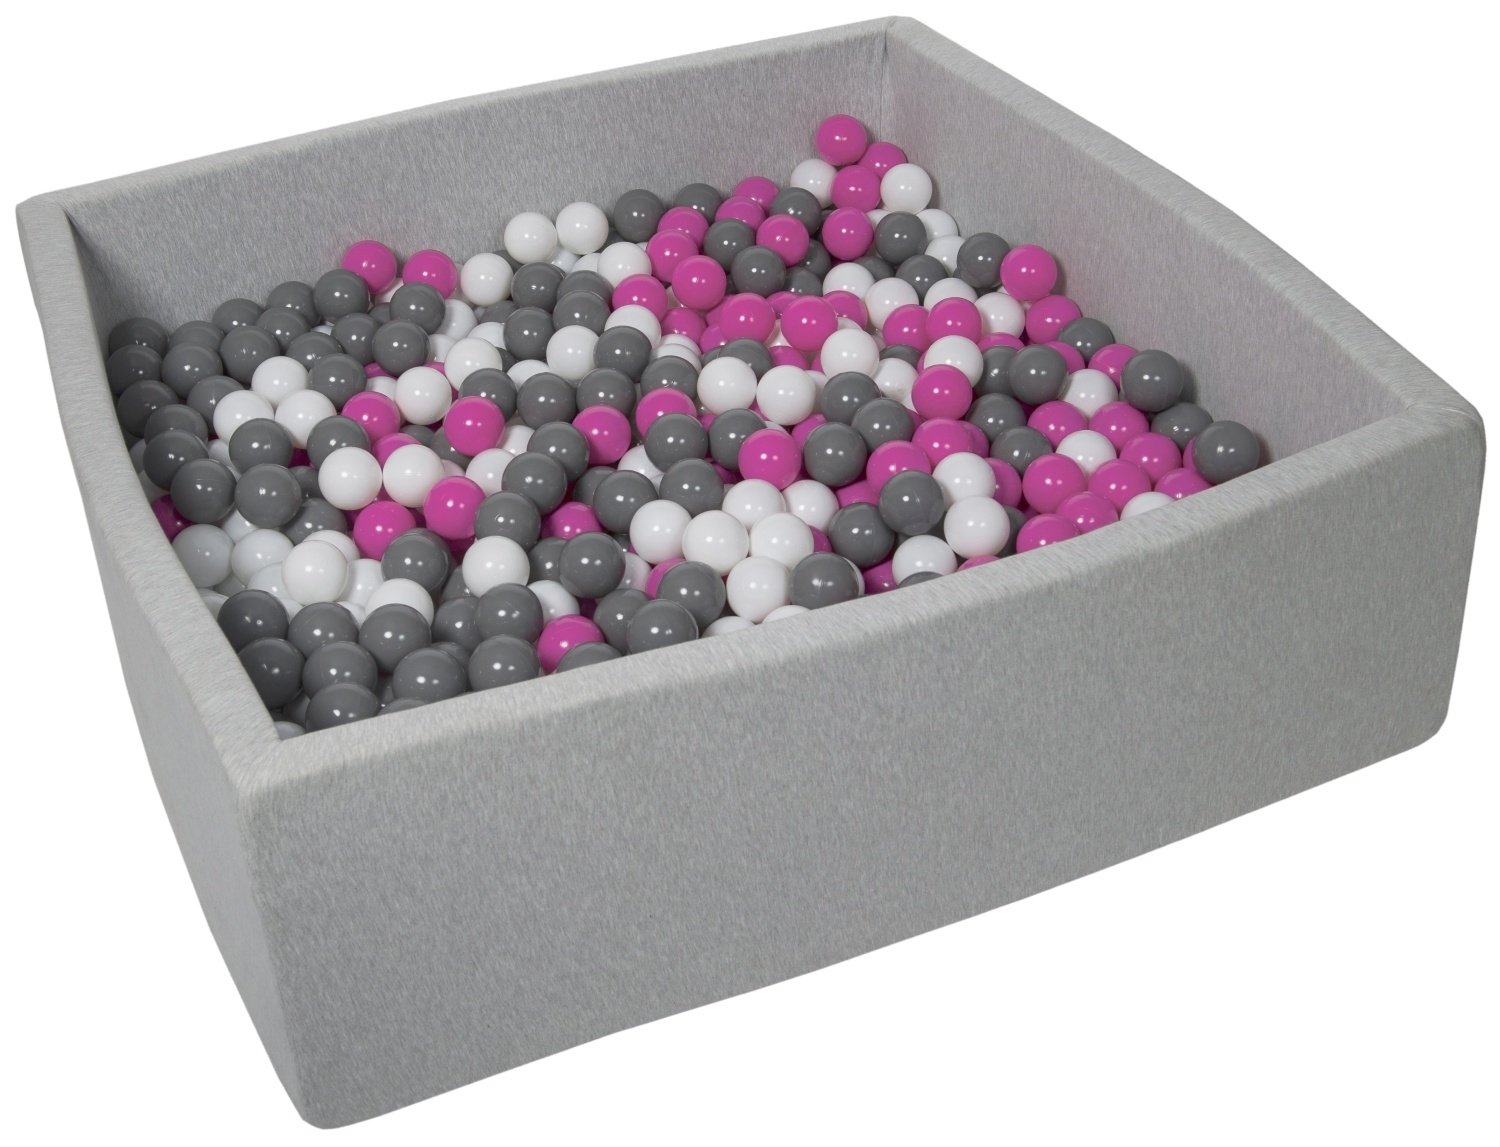 Piscine à balles carré pour bébé avec 900 balles 120x120cm gris clair balles violet